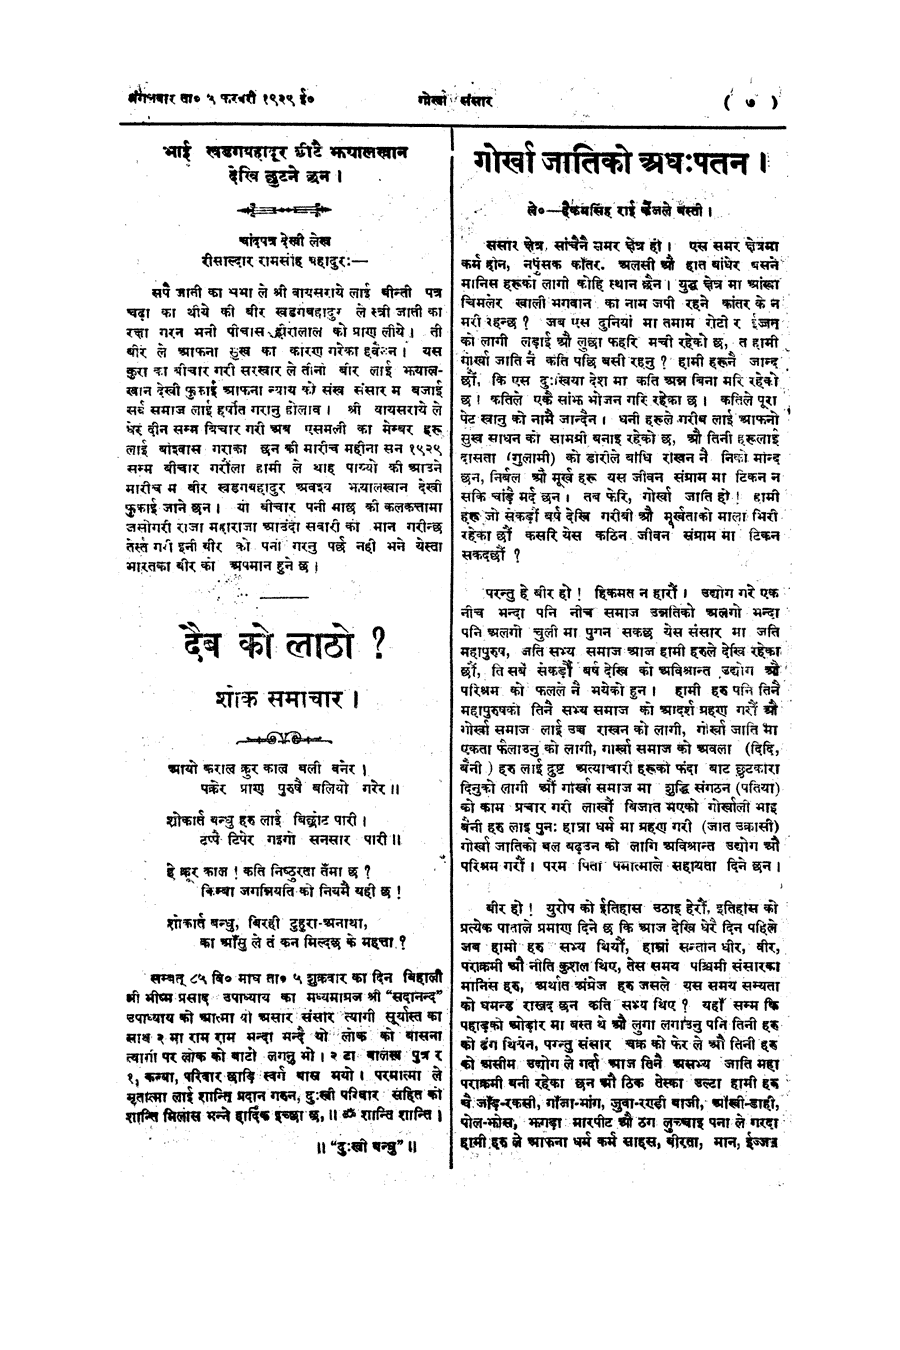 Gorkha Sansar, 5 Feb 1929, page 7